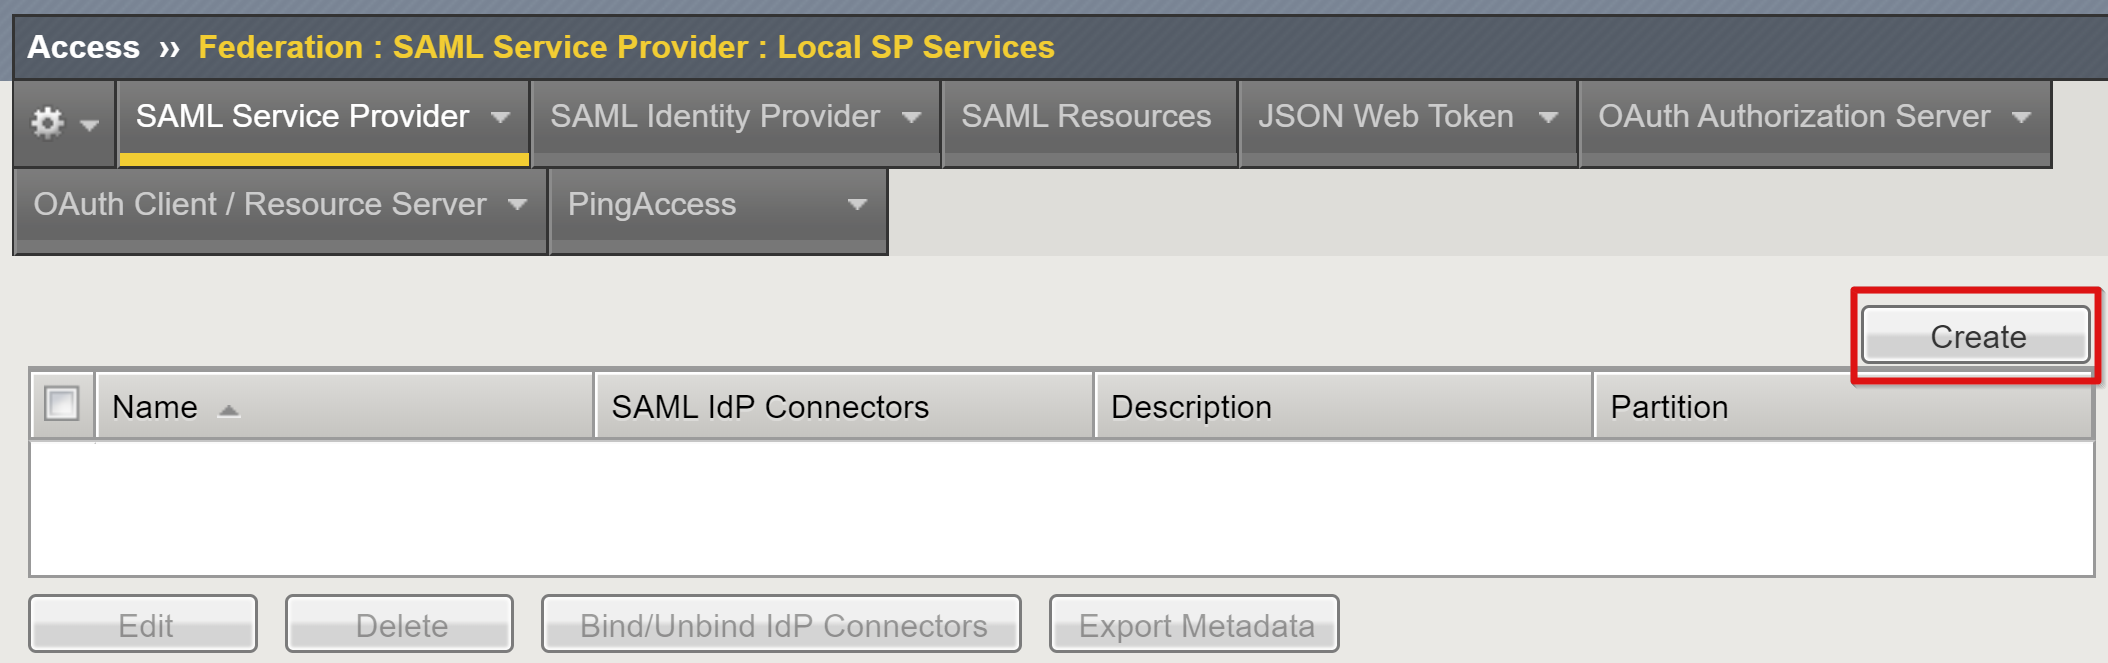 Képernyőkép a Helyi SP-szolgáltatások SAML-szolgáltatója területén található Létrehozás lehetőségről.